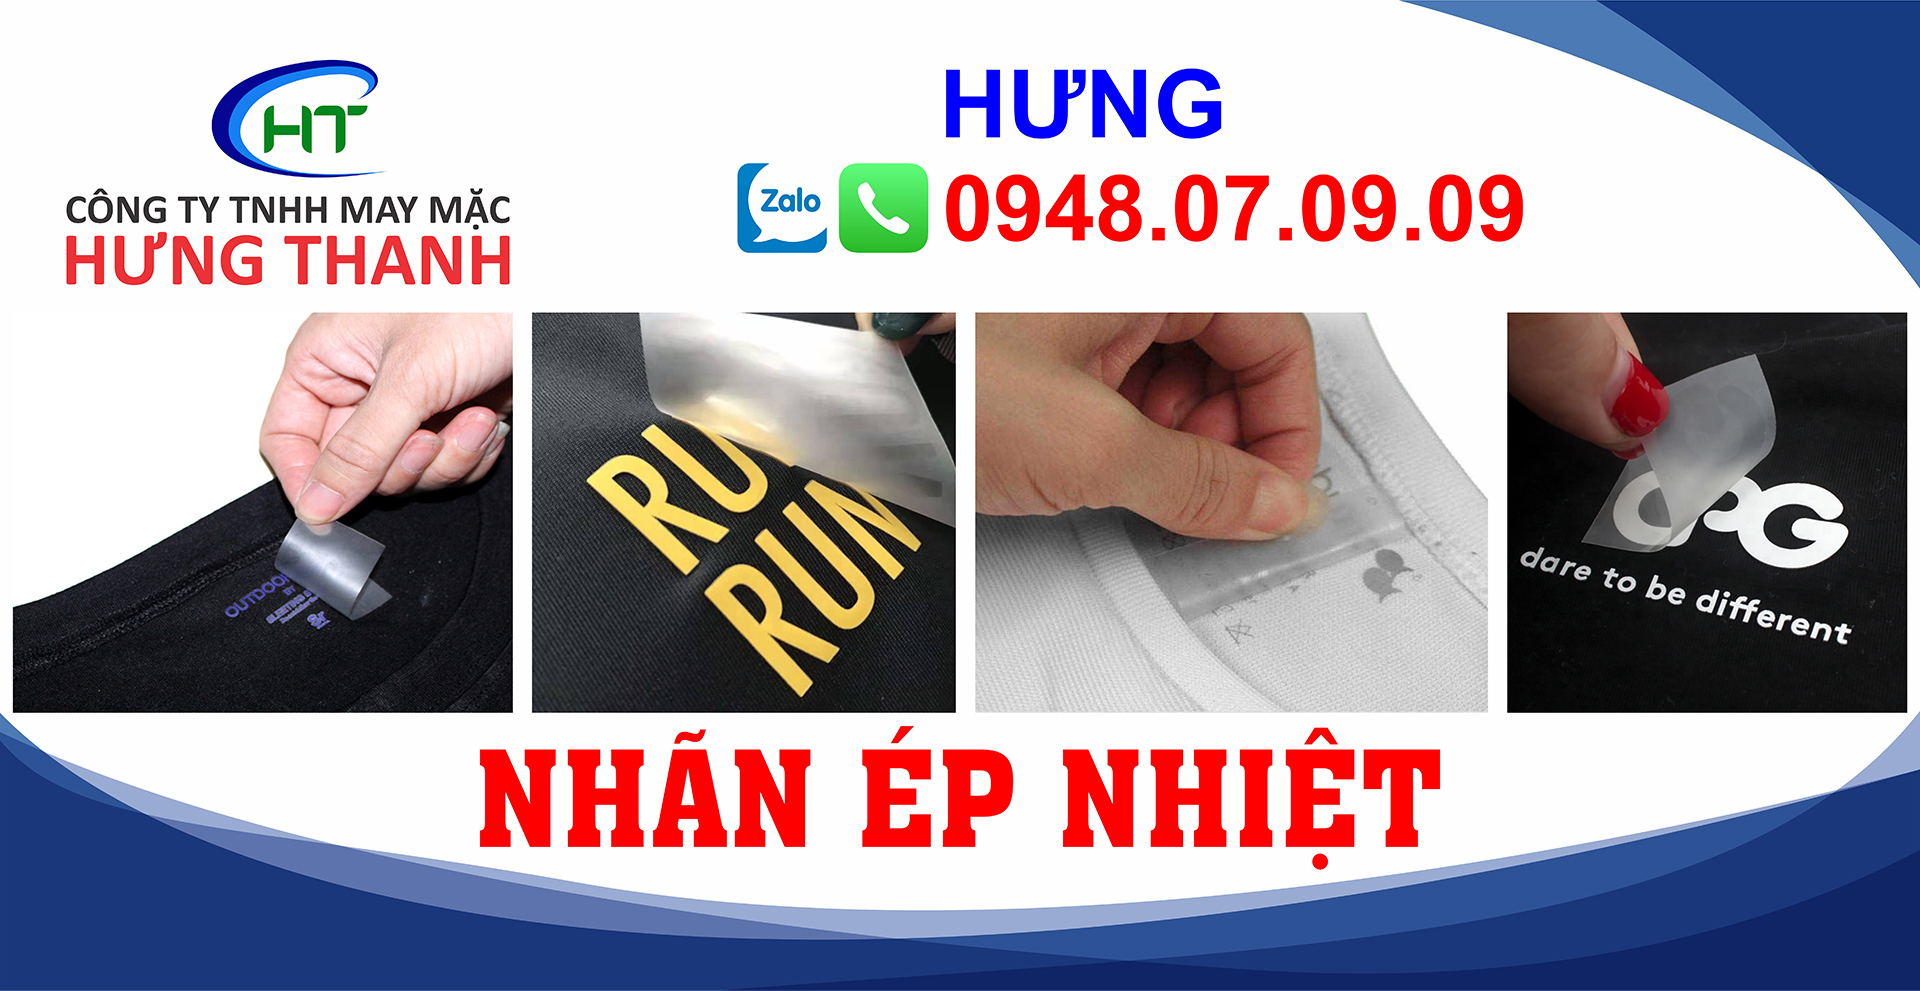 Nhãn ép nhiệt quần áo Hưng Thanh – Heat Transfer Label Nhan-ep-nhiet-Hung-Thanh-14